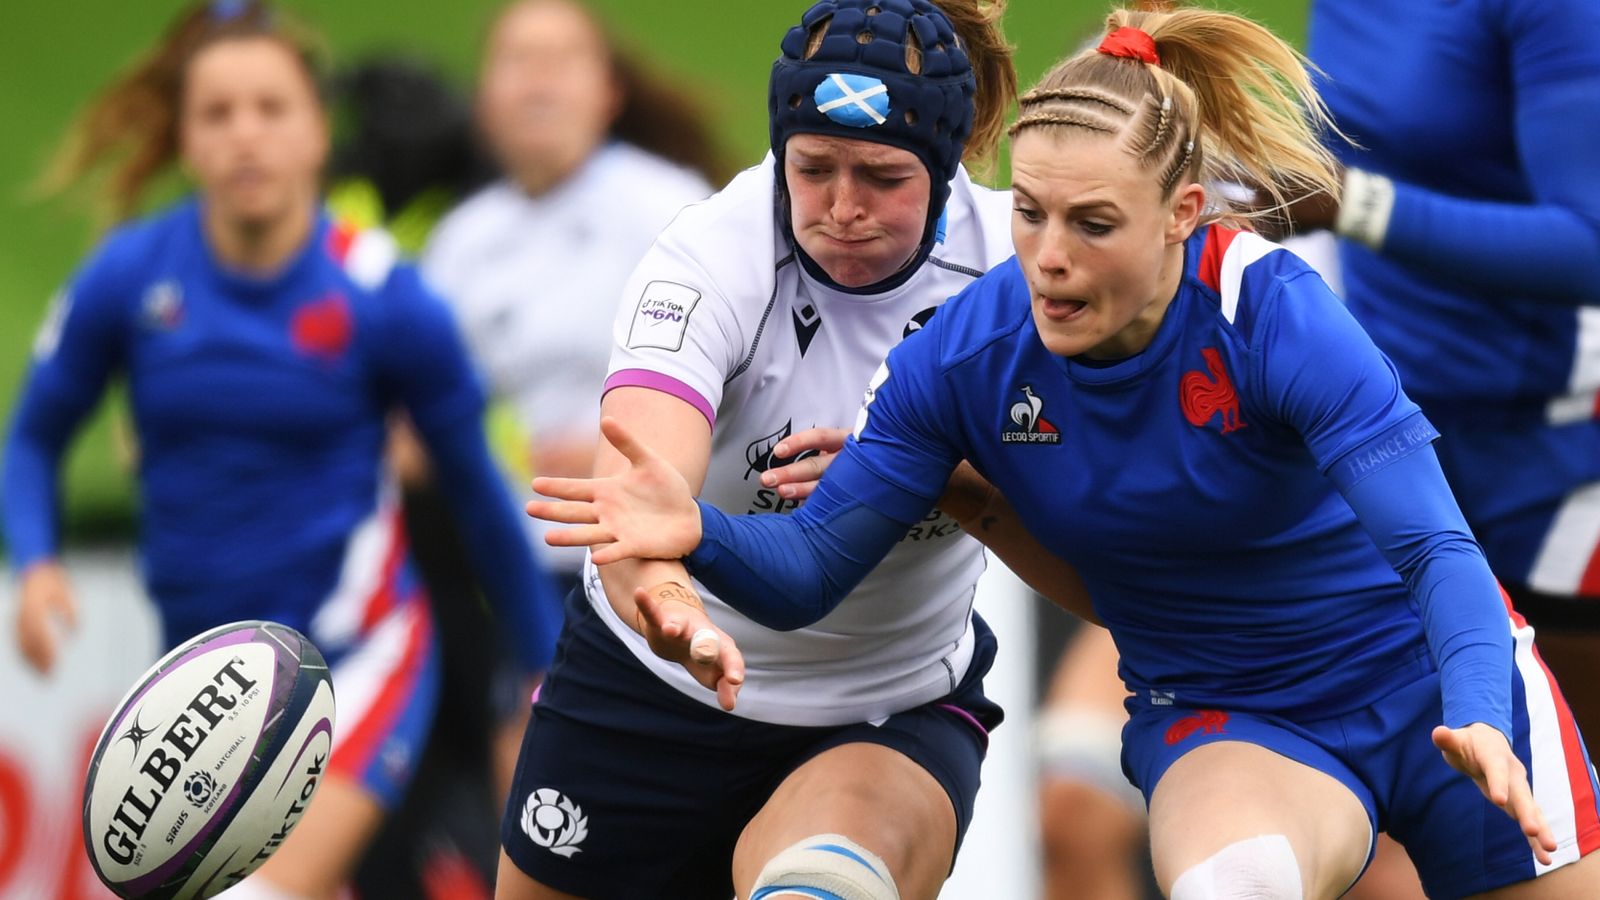 Scotland Women 8 - 28 France Women - Match Report & Highlights